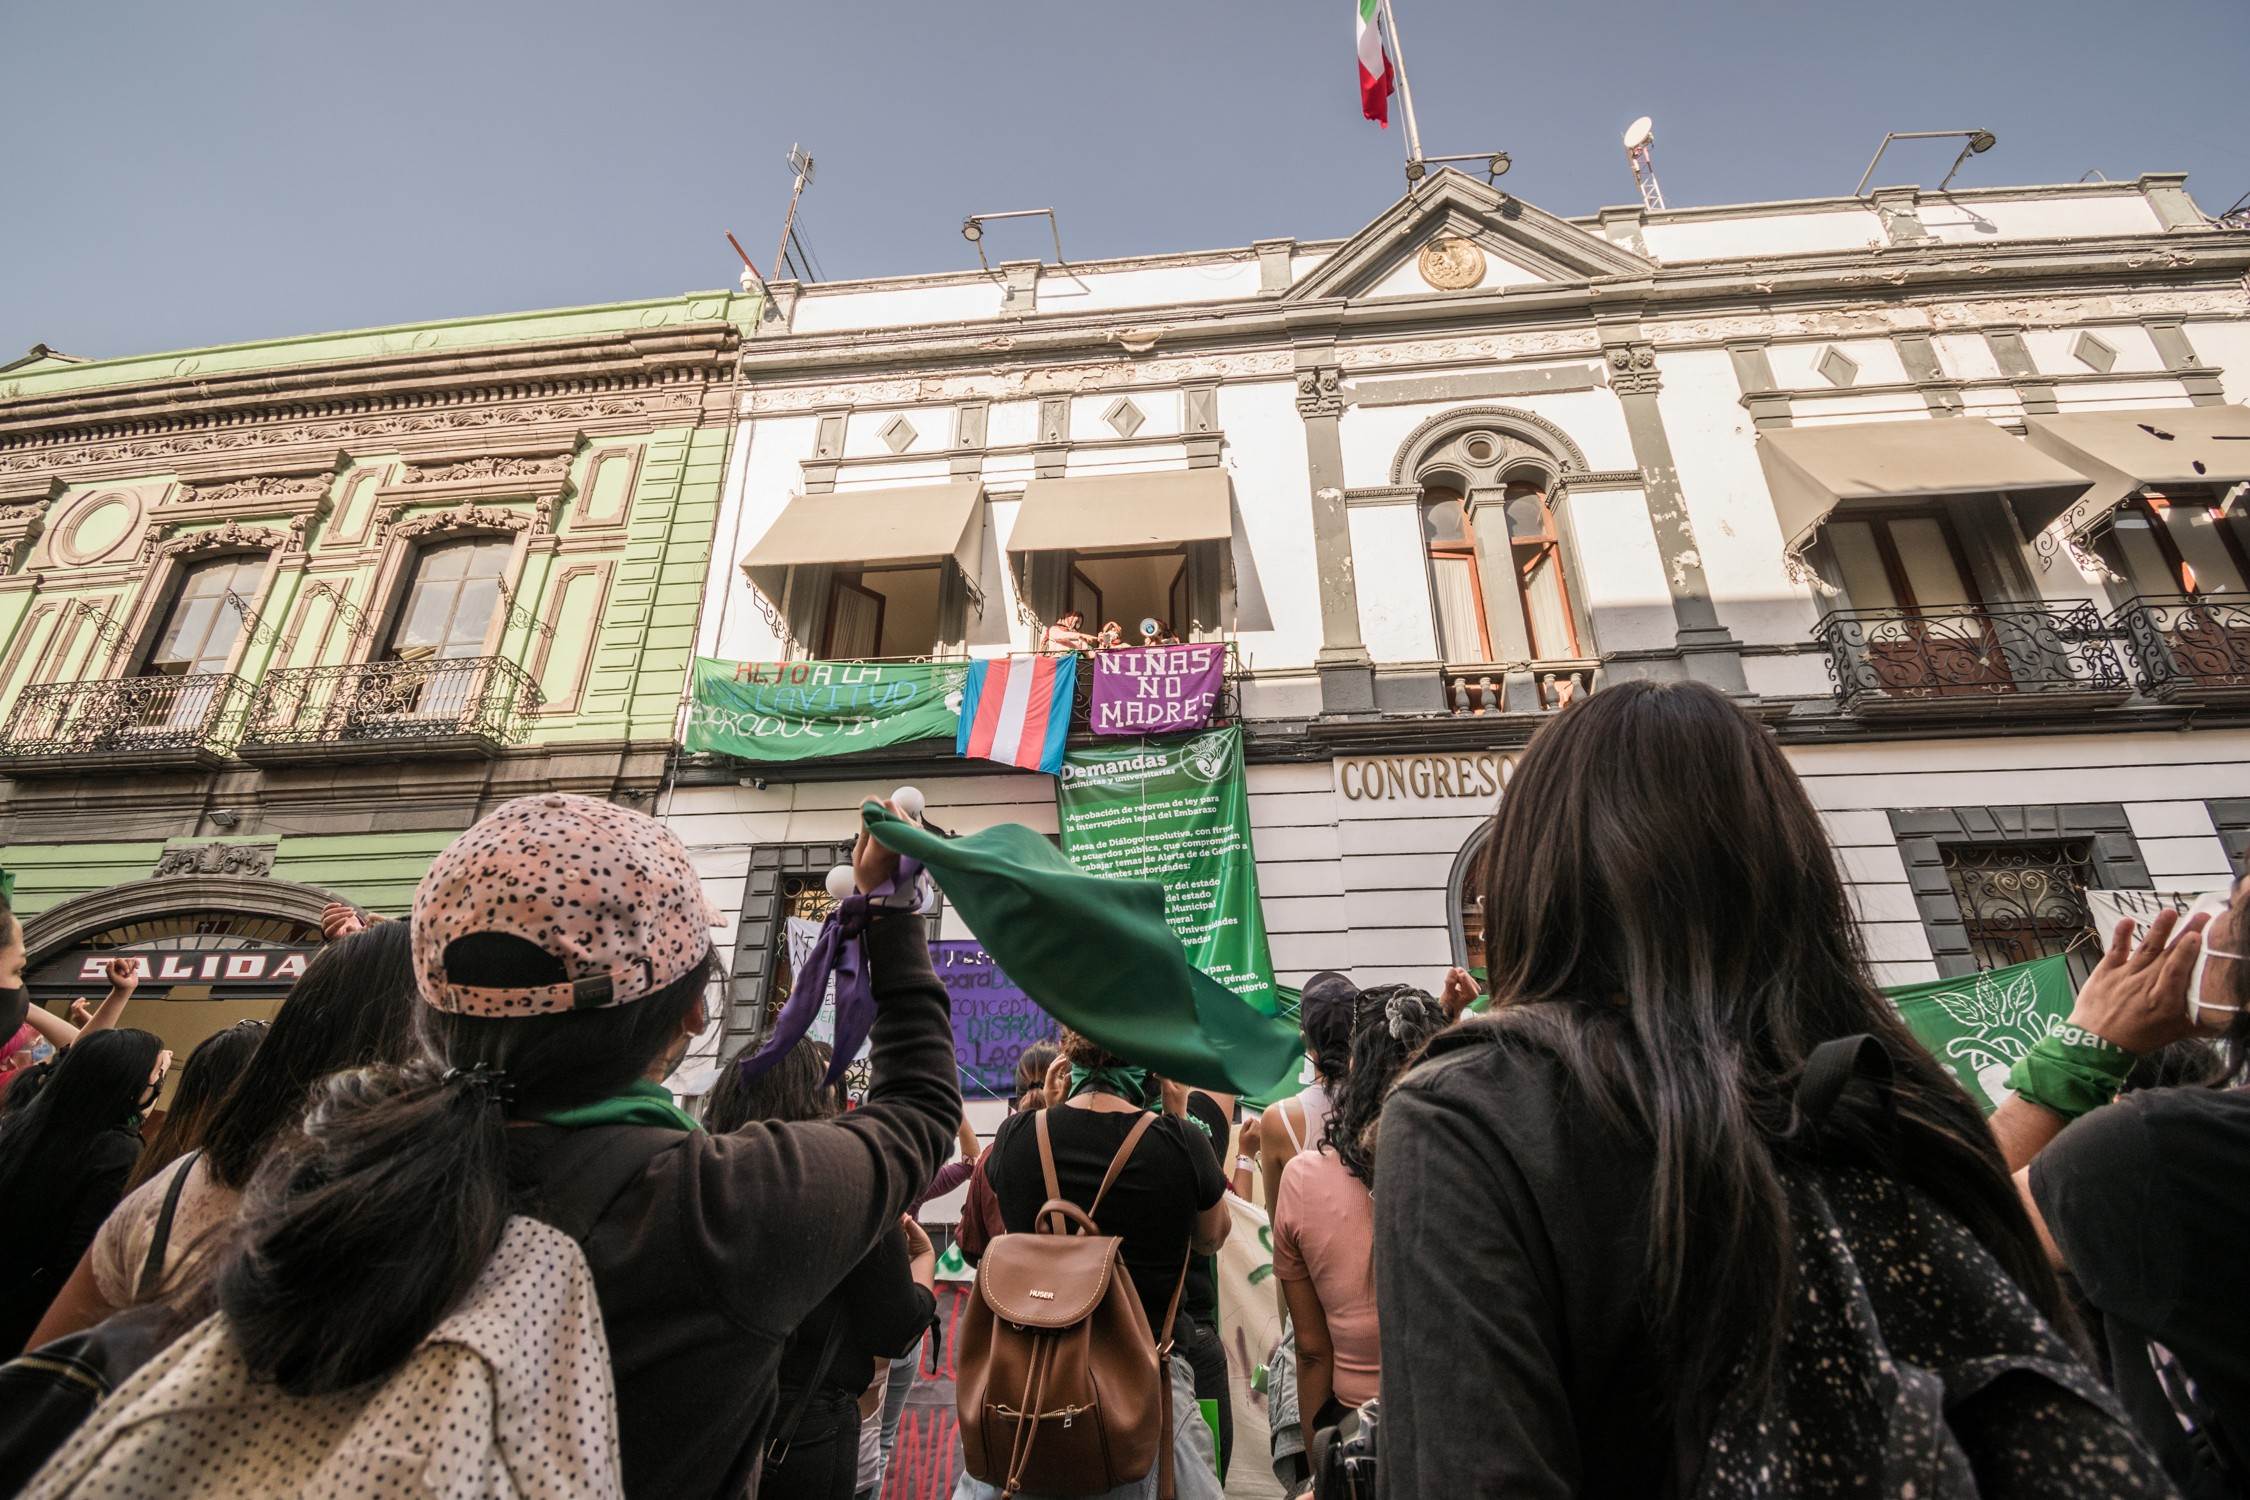 La toma del Congreso de Puebla comenzó como un despliegue audaz de dos organizaciones de mujeres jóvenes, pero ha derivado en un amplio bloque que reúne a organizaciones de derechos sexuales, activistas, políticas, funcionarias, artistas, periodistas y un largo etcétera. Fotografía: Daniel Chazari.